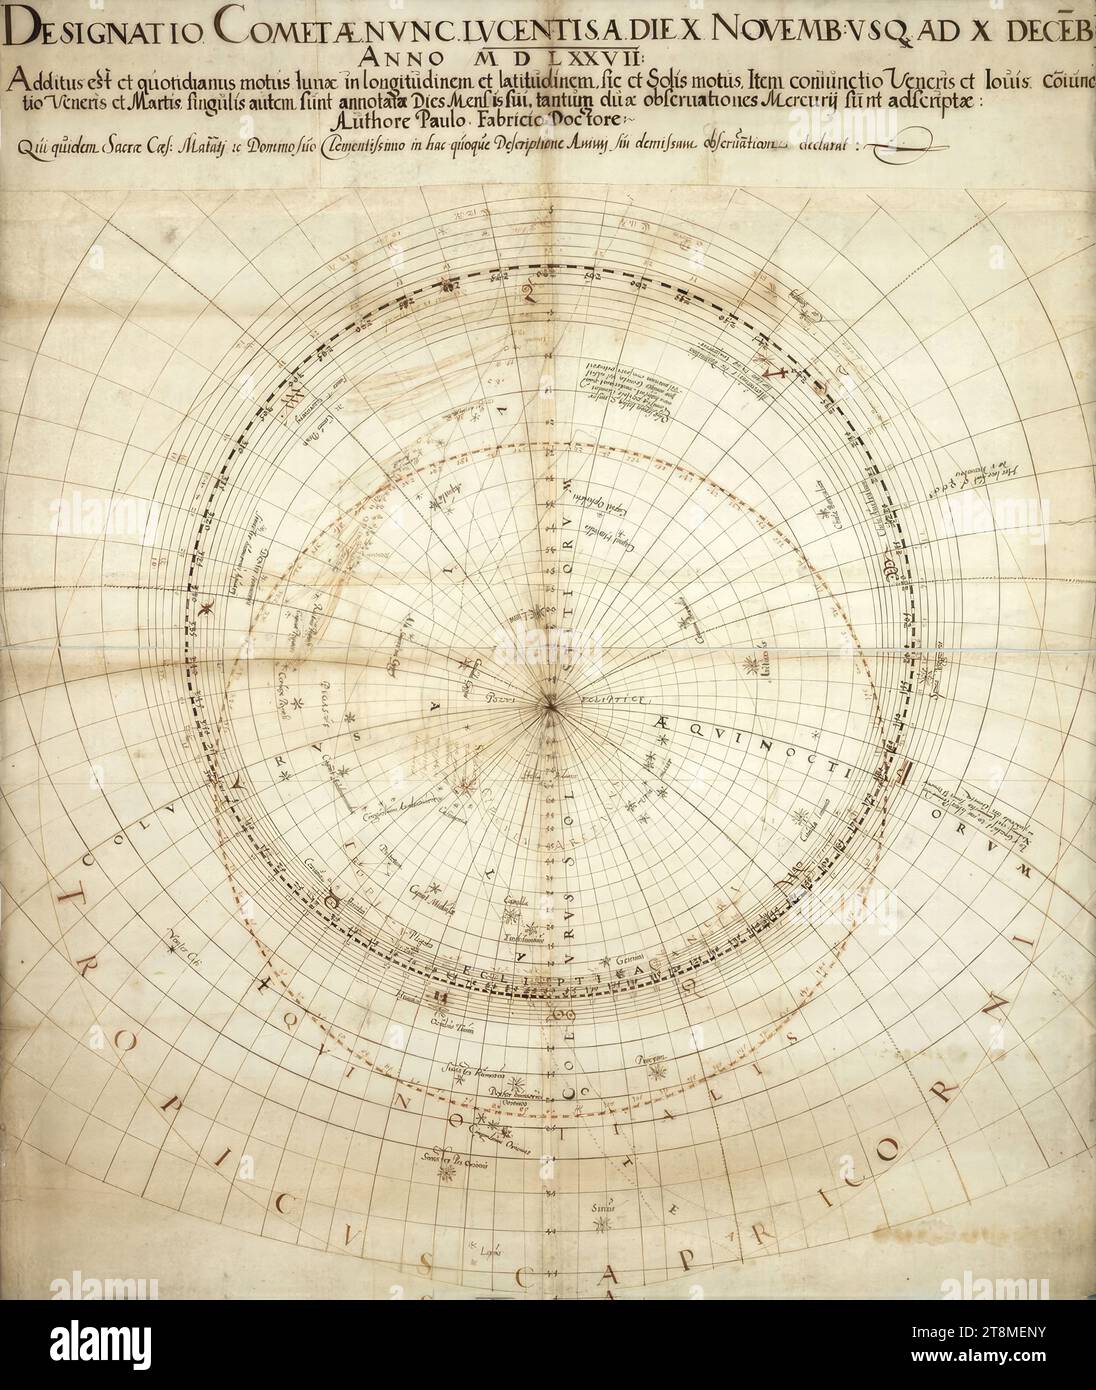 Sternkarte mit Kometenbahn, Paul Fabricius (Lubań (Lauban) 1529 - 1589 Wien), 1577, Zeichnung, 82,5 x 70,2 cm, DESIGNATIO COMETÆ NVNC LVCENTISA DIE 10 NOVEMB: VSQ ad 10 DECEB || NELL'ANNO 1000 D L 27 è stato aggiunto il moto giornaliero della luna in longitudine e latitudine, così come il moto del sole. Allo stesso modo, la congiunzione del venerdì e della congiunzione del venerdì e del martedì sono annotate come il giorno del loro mese, solo due osservazioni di mercurio sono registrate: Da Paul Fabricius Doctor:|| che, in effetti, il Sacro cane: Matatj TC al suo Signore Misericordioso Foto Stock